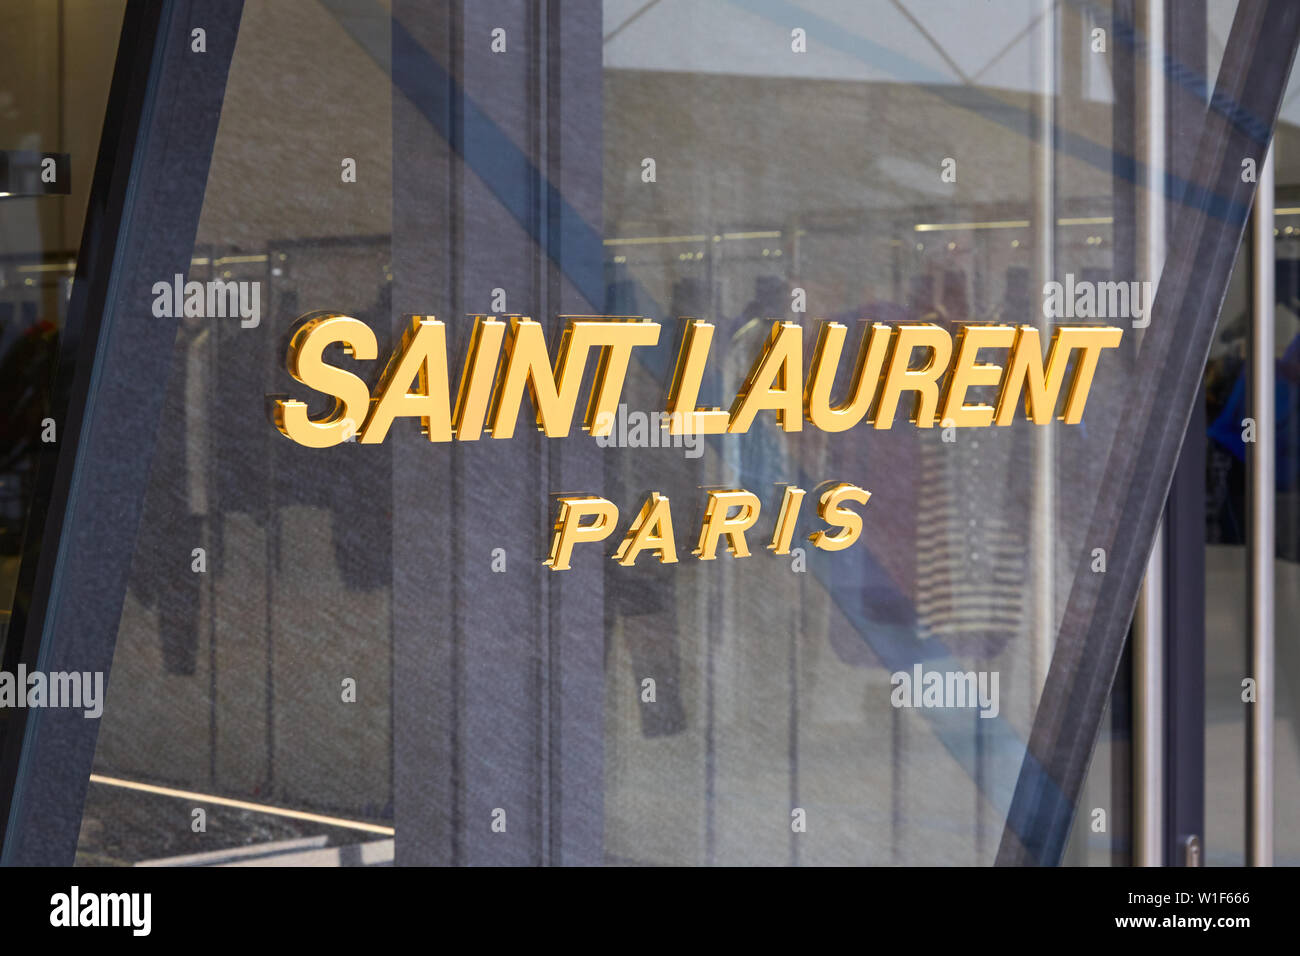 MONTE CARLO, Monaco - Agosto 20, 2016: Saint Laurent tienda de lujo de moda firmar en Montecarlo, Mónaco. Foto de stock